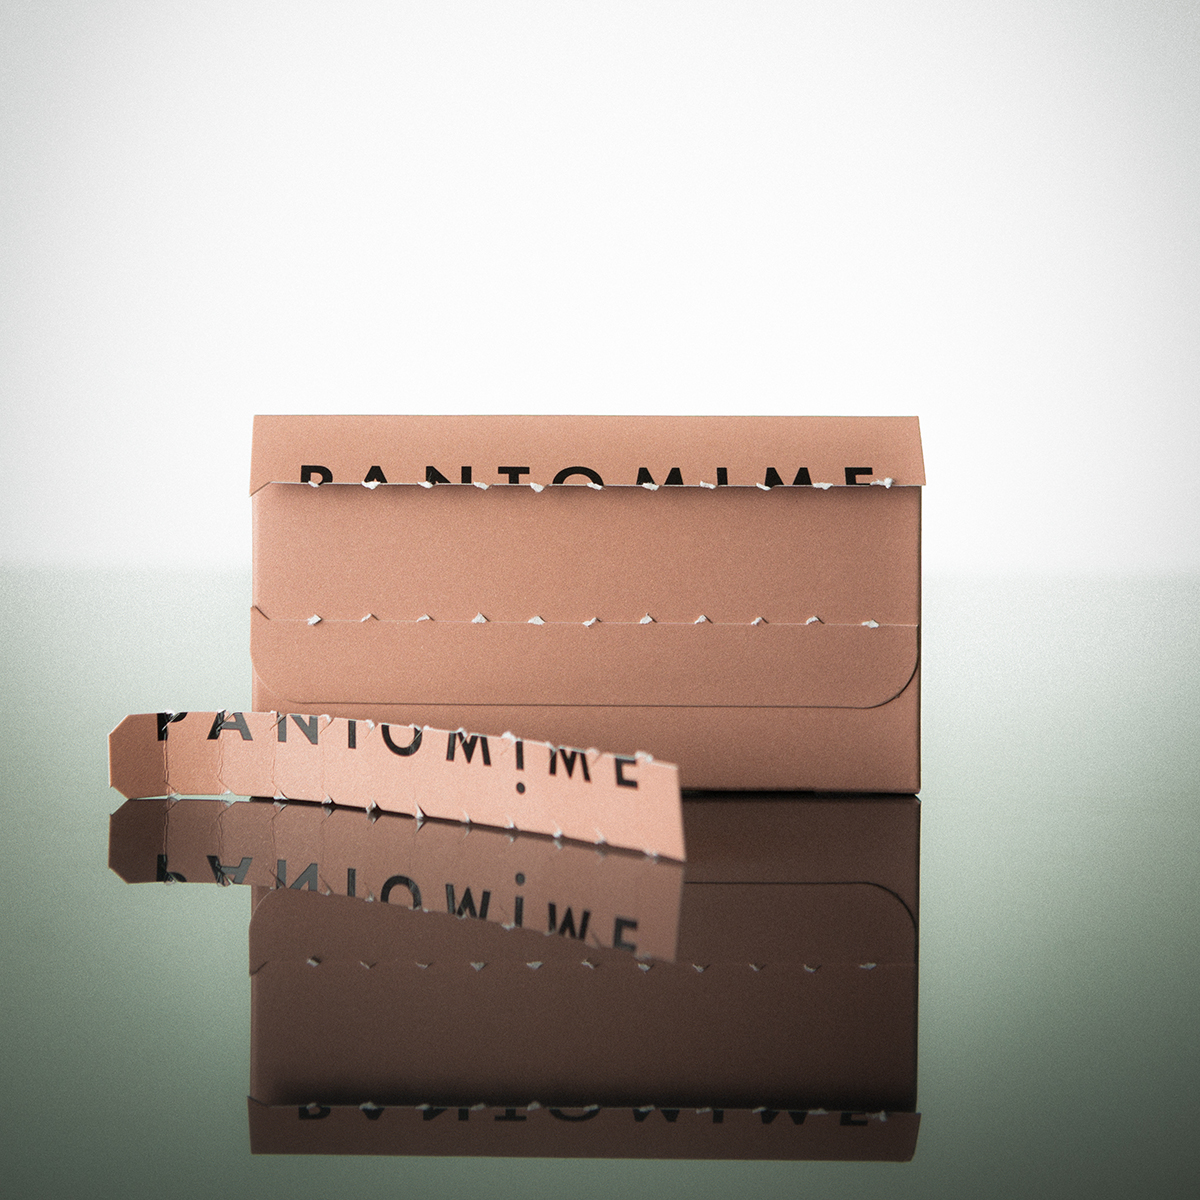 PANTOMIME Parfum - Discovery Set